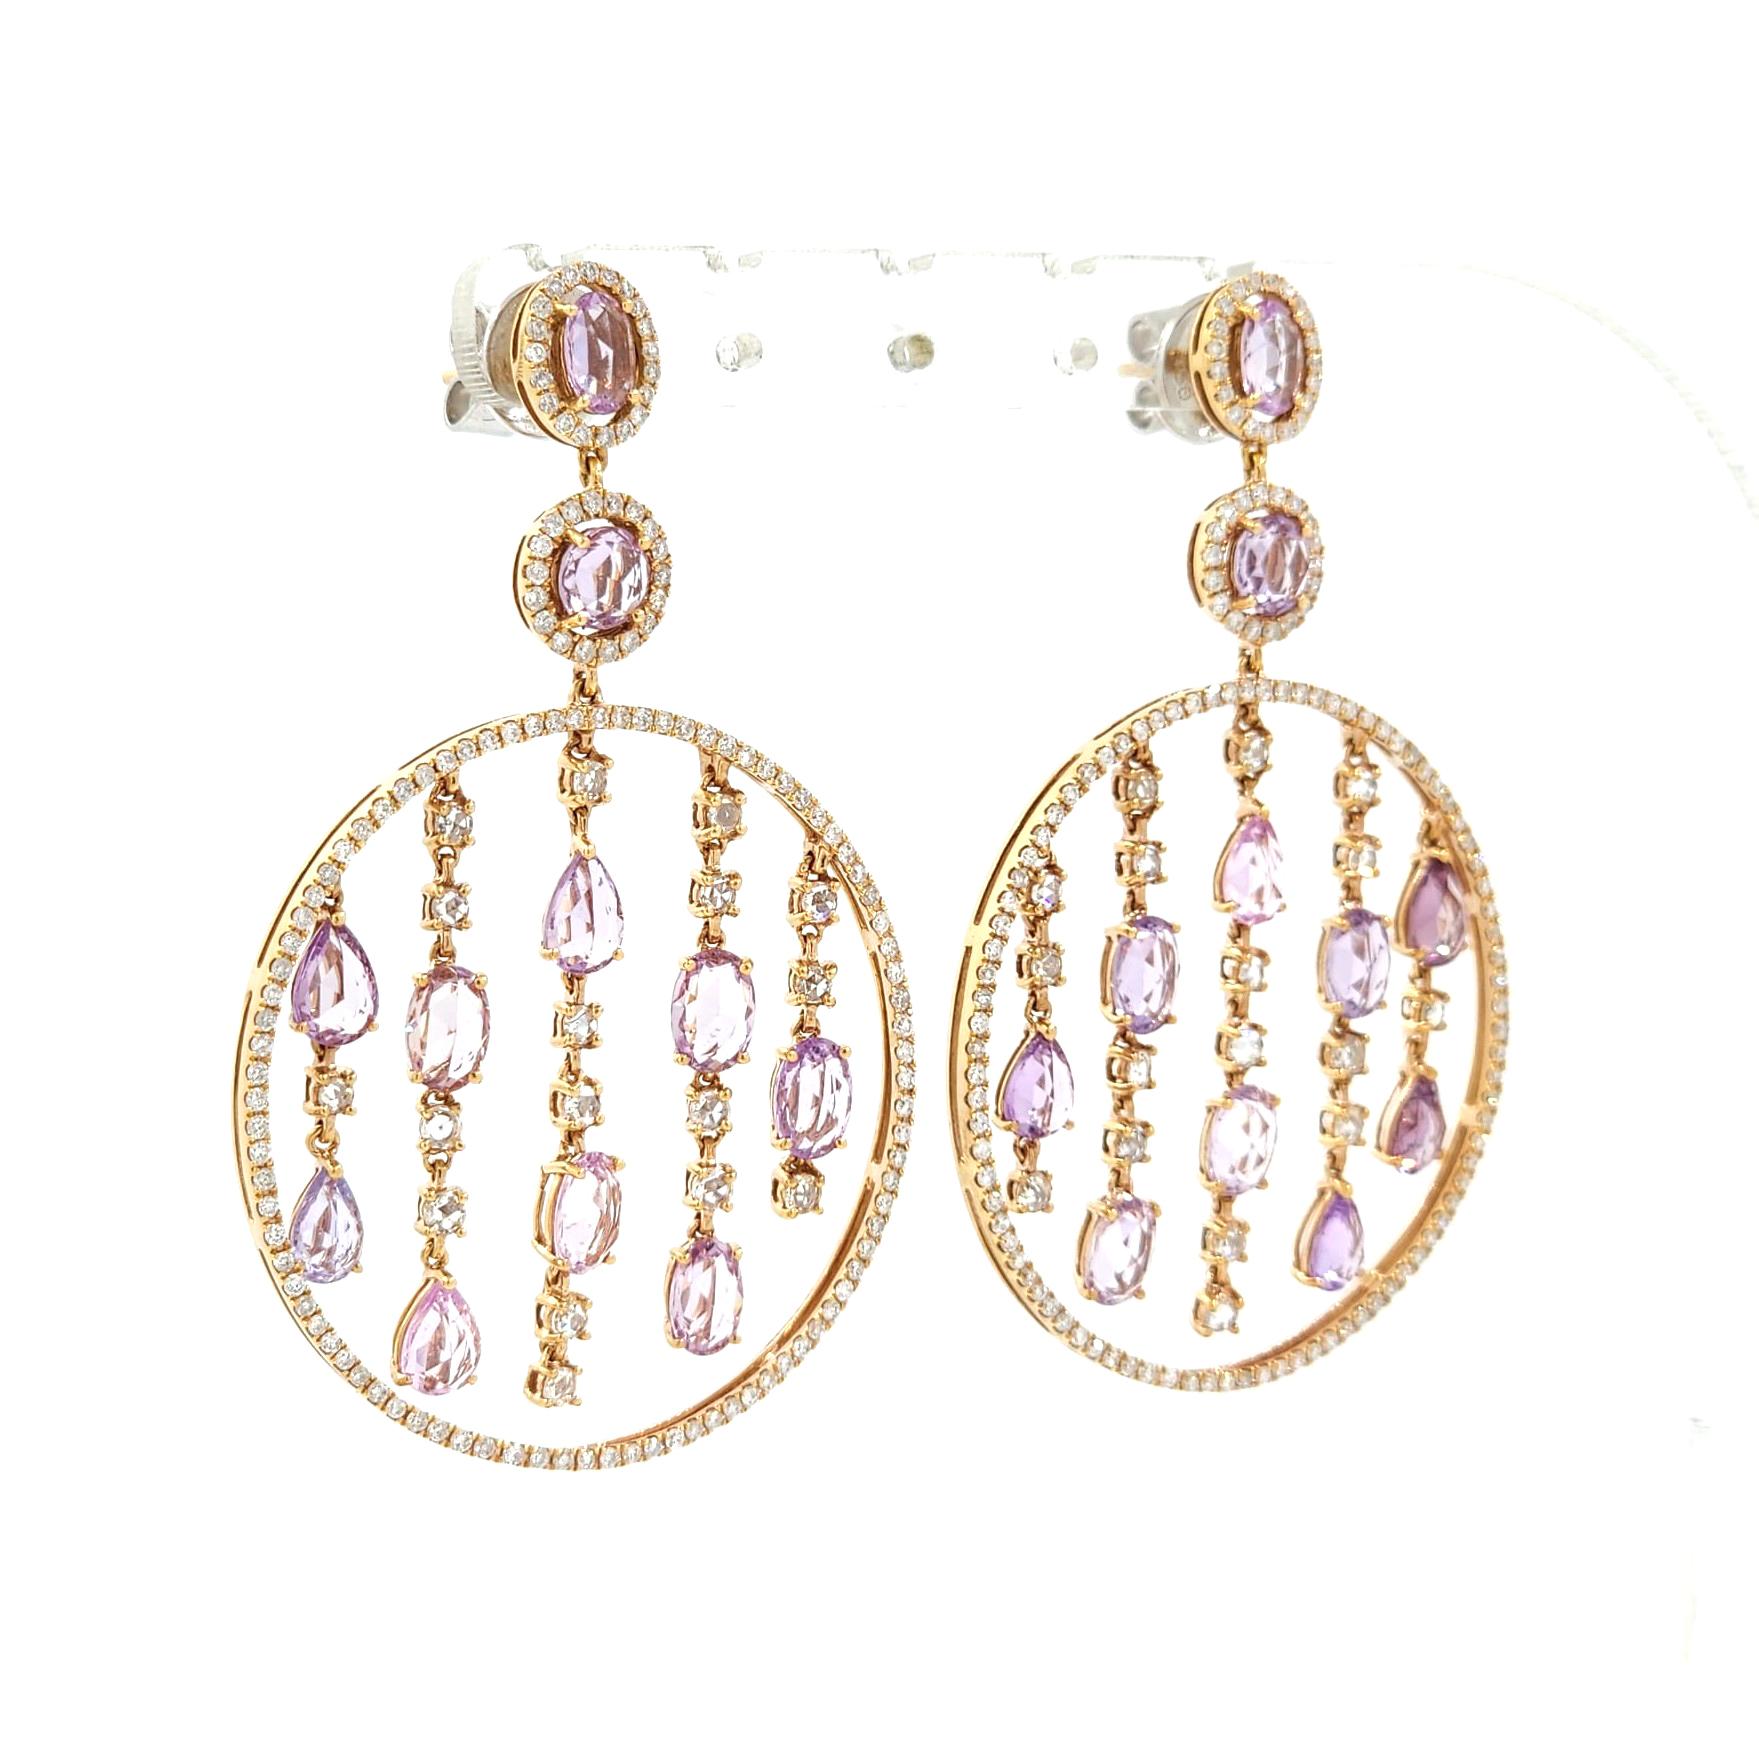 Wir präsentieren unsere atemberaubenden Vintage 11.75 Ct Fancy Pink Sapphire Diamond Chandelier Ohrringe in 18K Rose Gold. Diese Ohrringe sind ein wahres Zeugnis für die Anziehungskraft und Eleganz natürlicher Edelsteine und setzen ein kühnes und